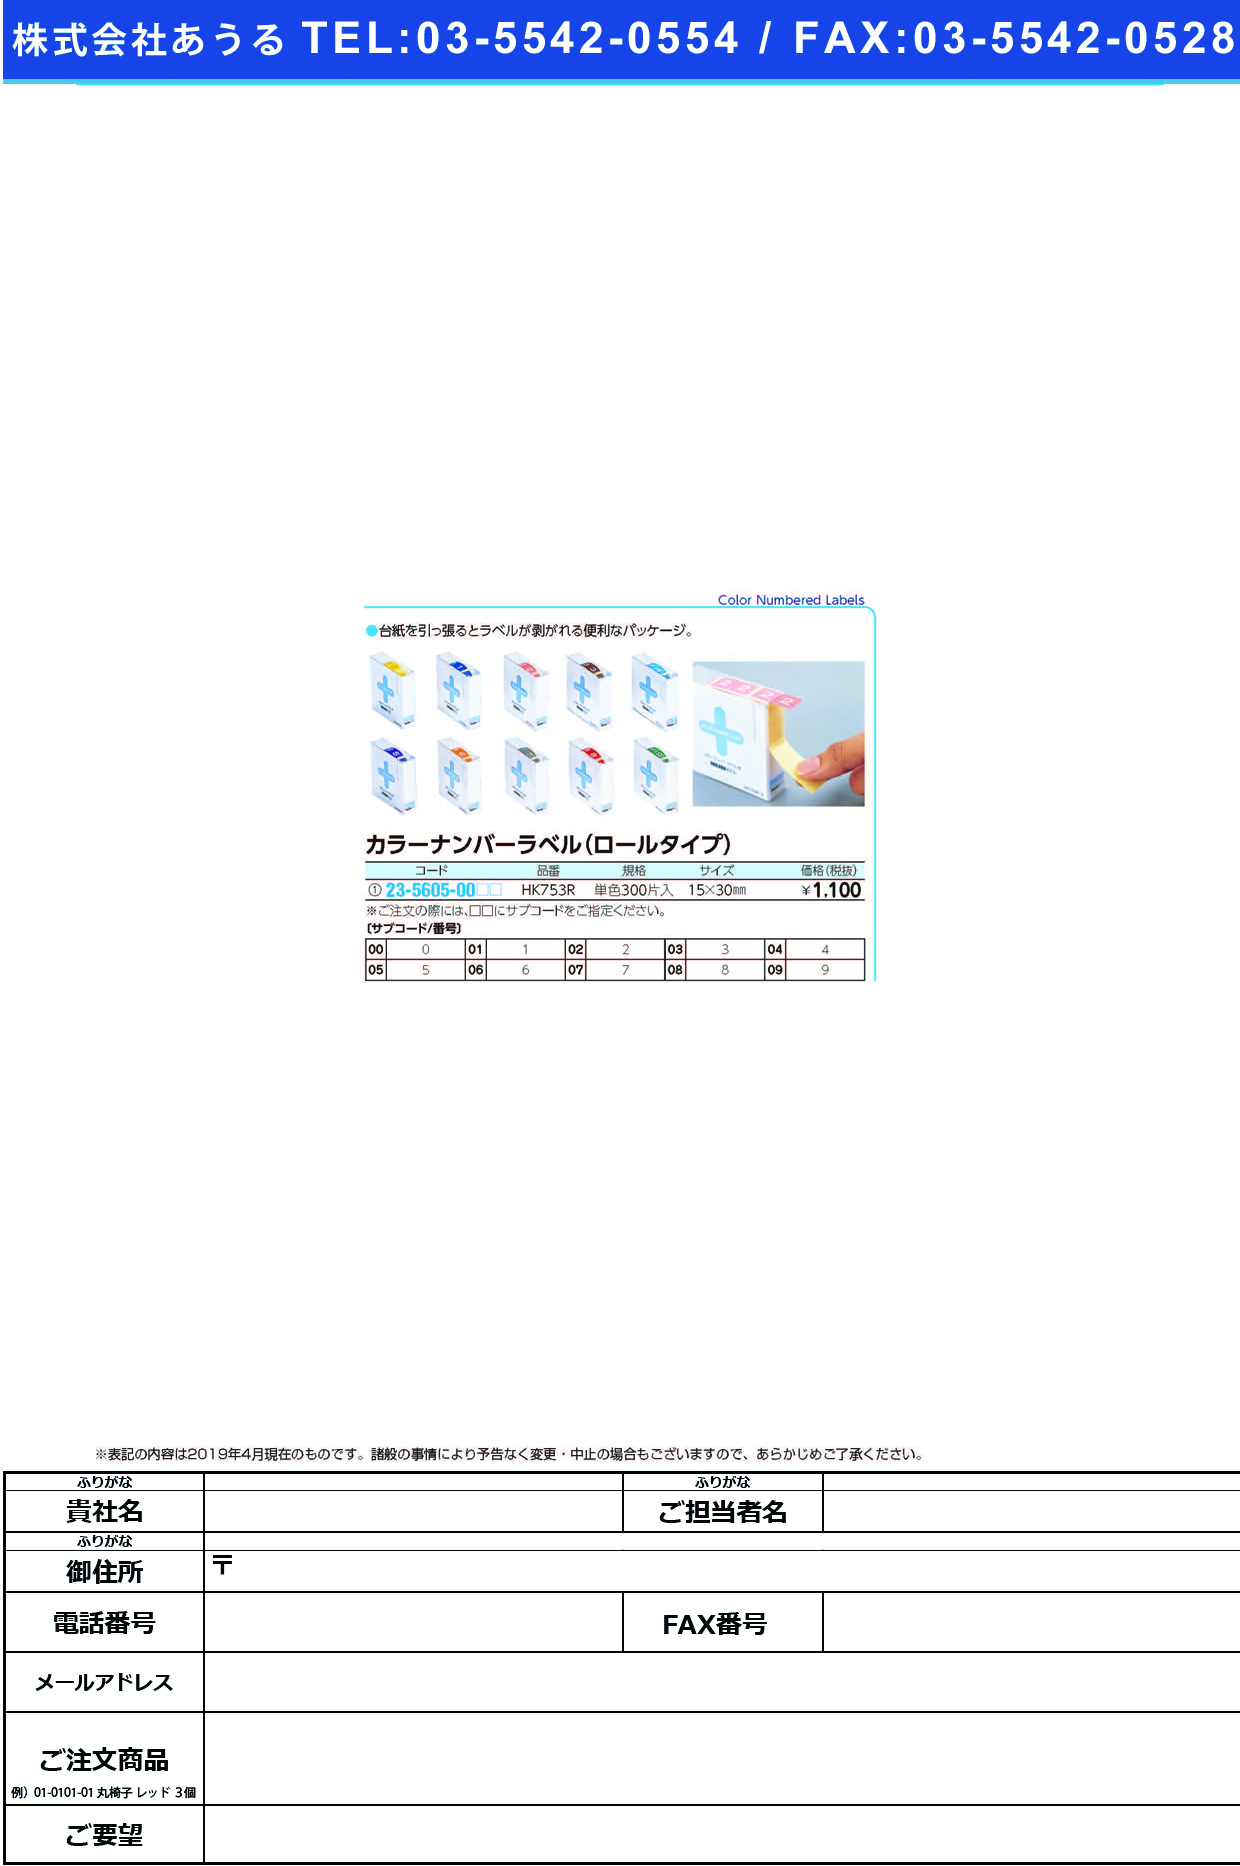 (23-5605-00)カラーナンバーラベル（Ｍ）ロール HK753R(ﾀﾝﾊﾞﾝ)300ﾍﾝｲﾘ ｶﾗｰﾅﾝﾊﾞｰﾗﾍﾞﾙMﾛｰﾙ １(ＬＩＨＩＴＬＡＢ．)【1箱単位】【2019年カタログ商品】